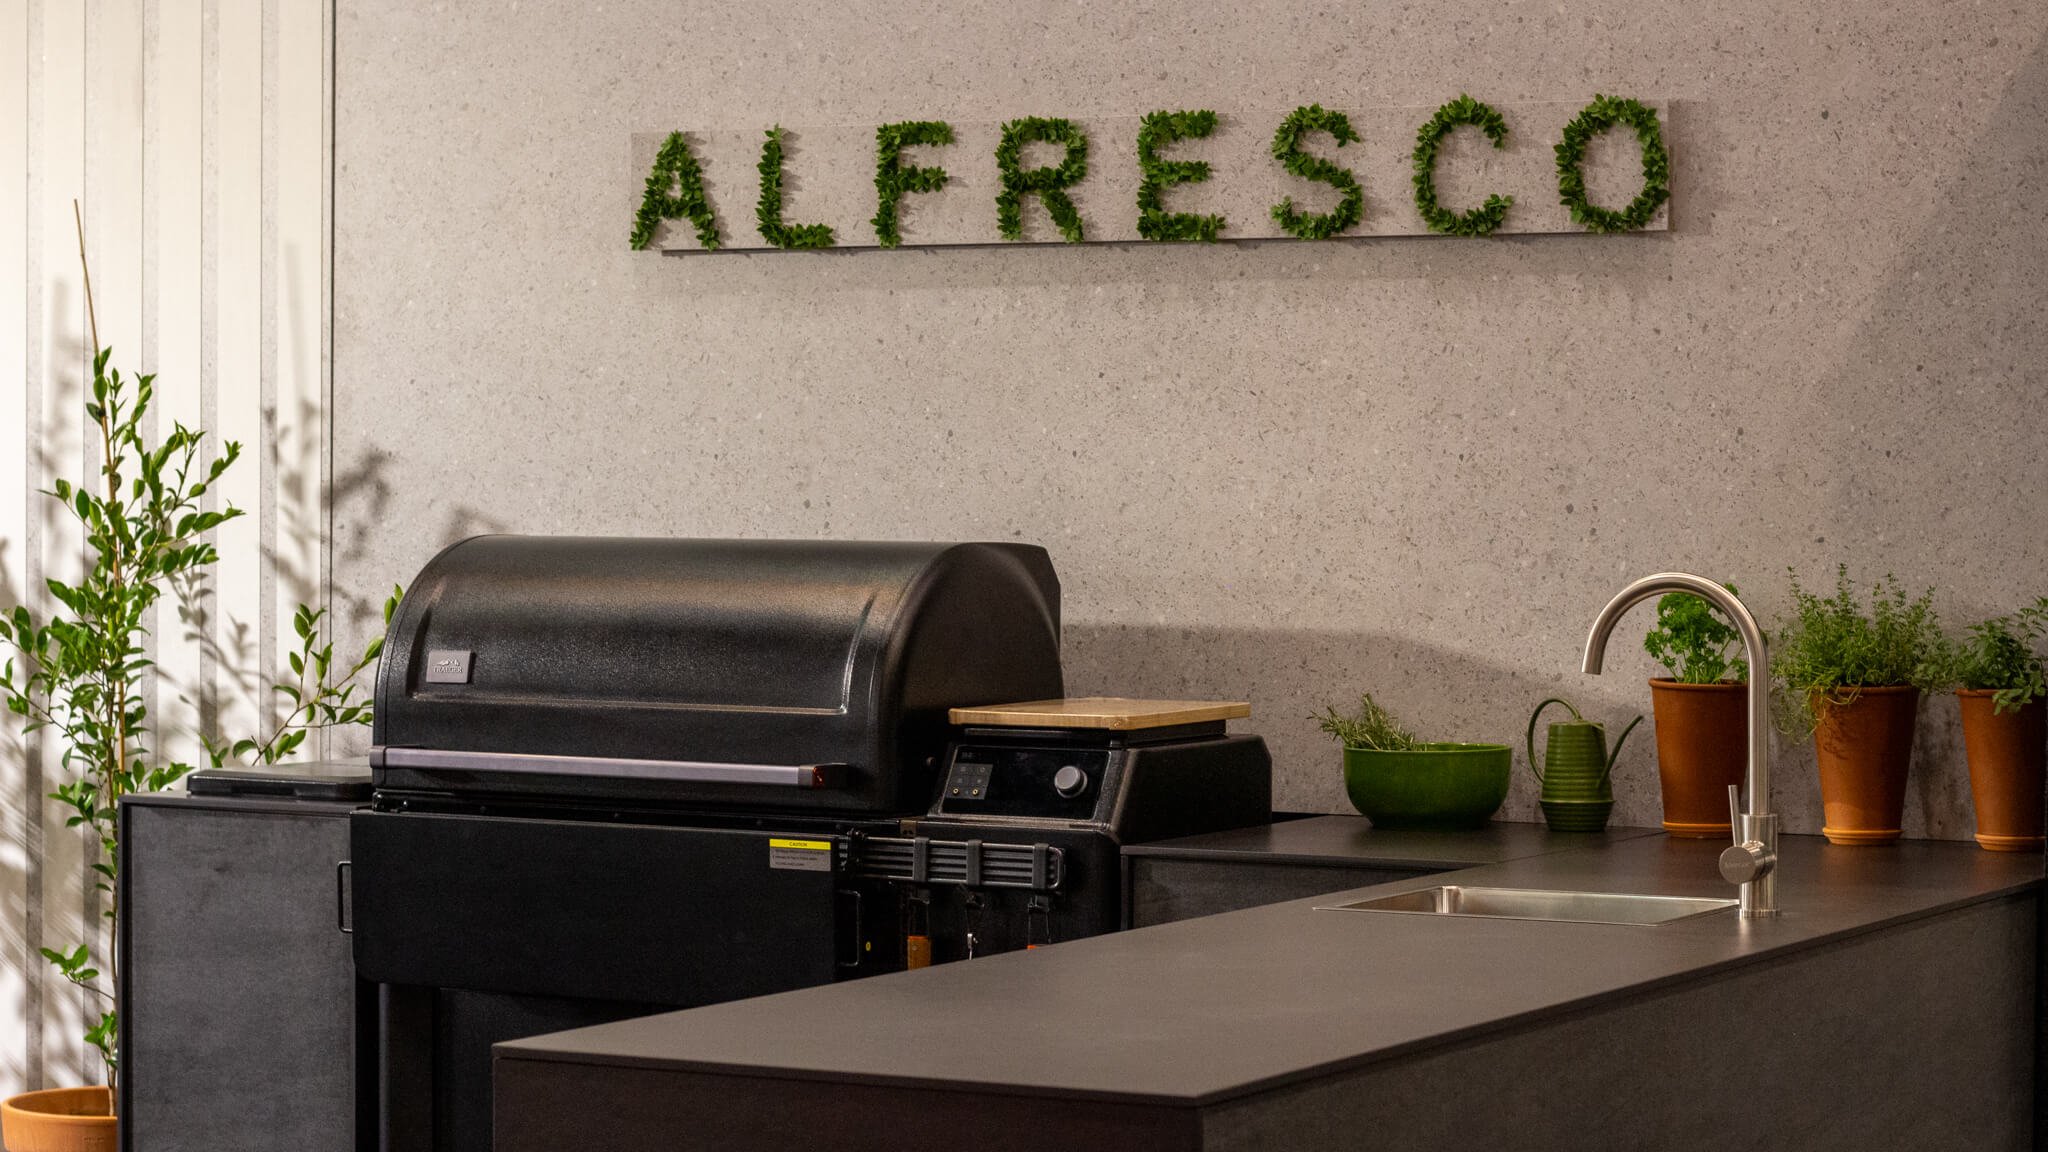 Alfresco Home Show